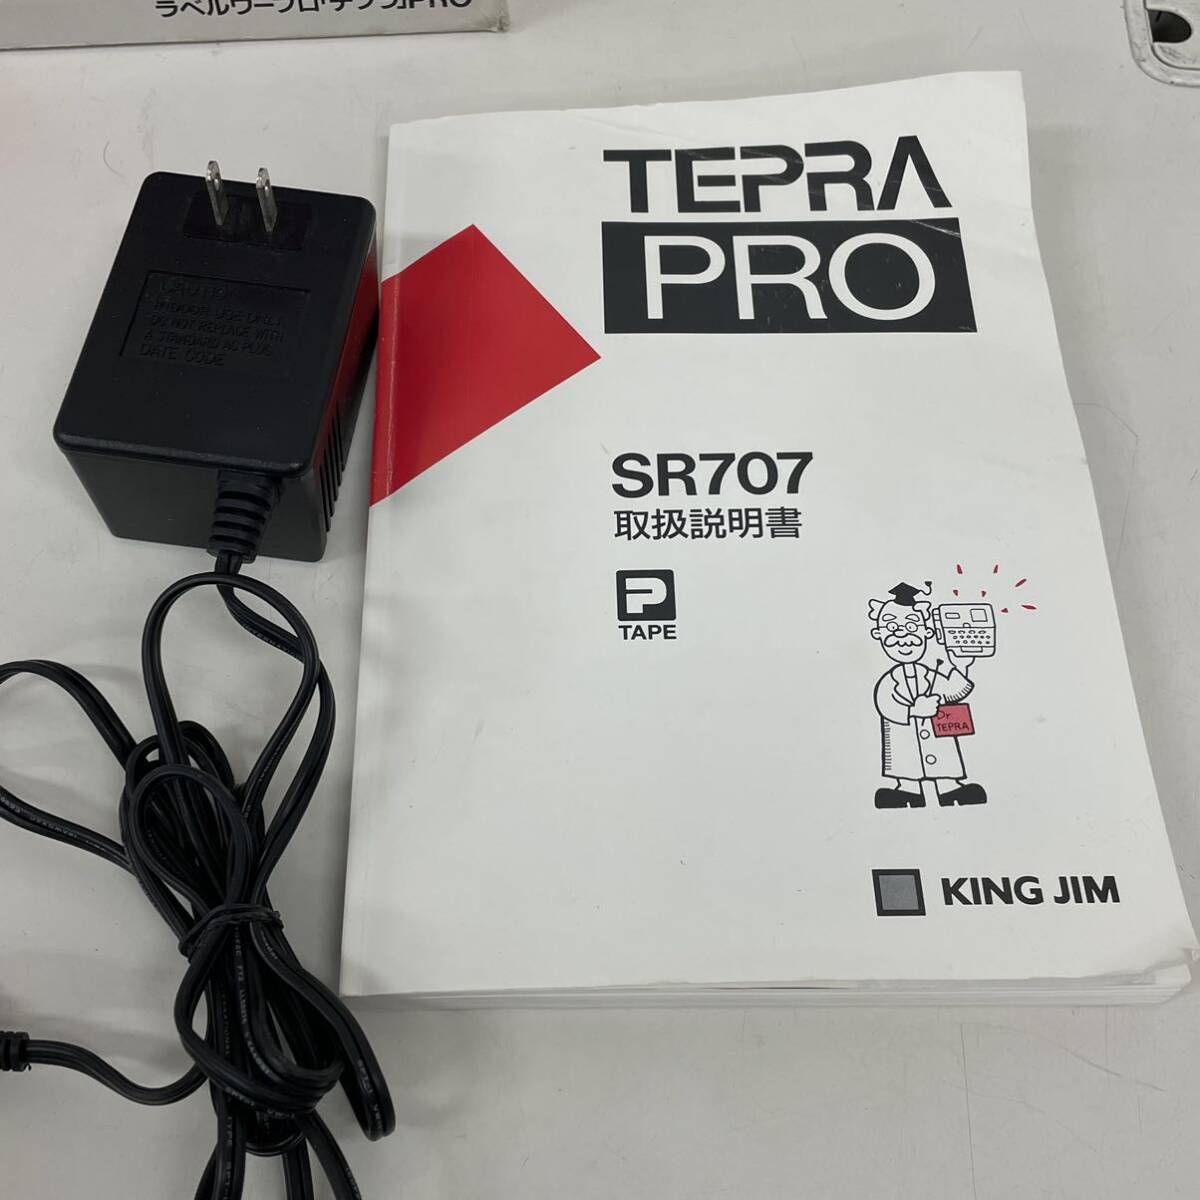 TEPRA PRO テプラプロ SR707 KING JIM キングジム ラベルワープロ テプラ 現状品の画像8